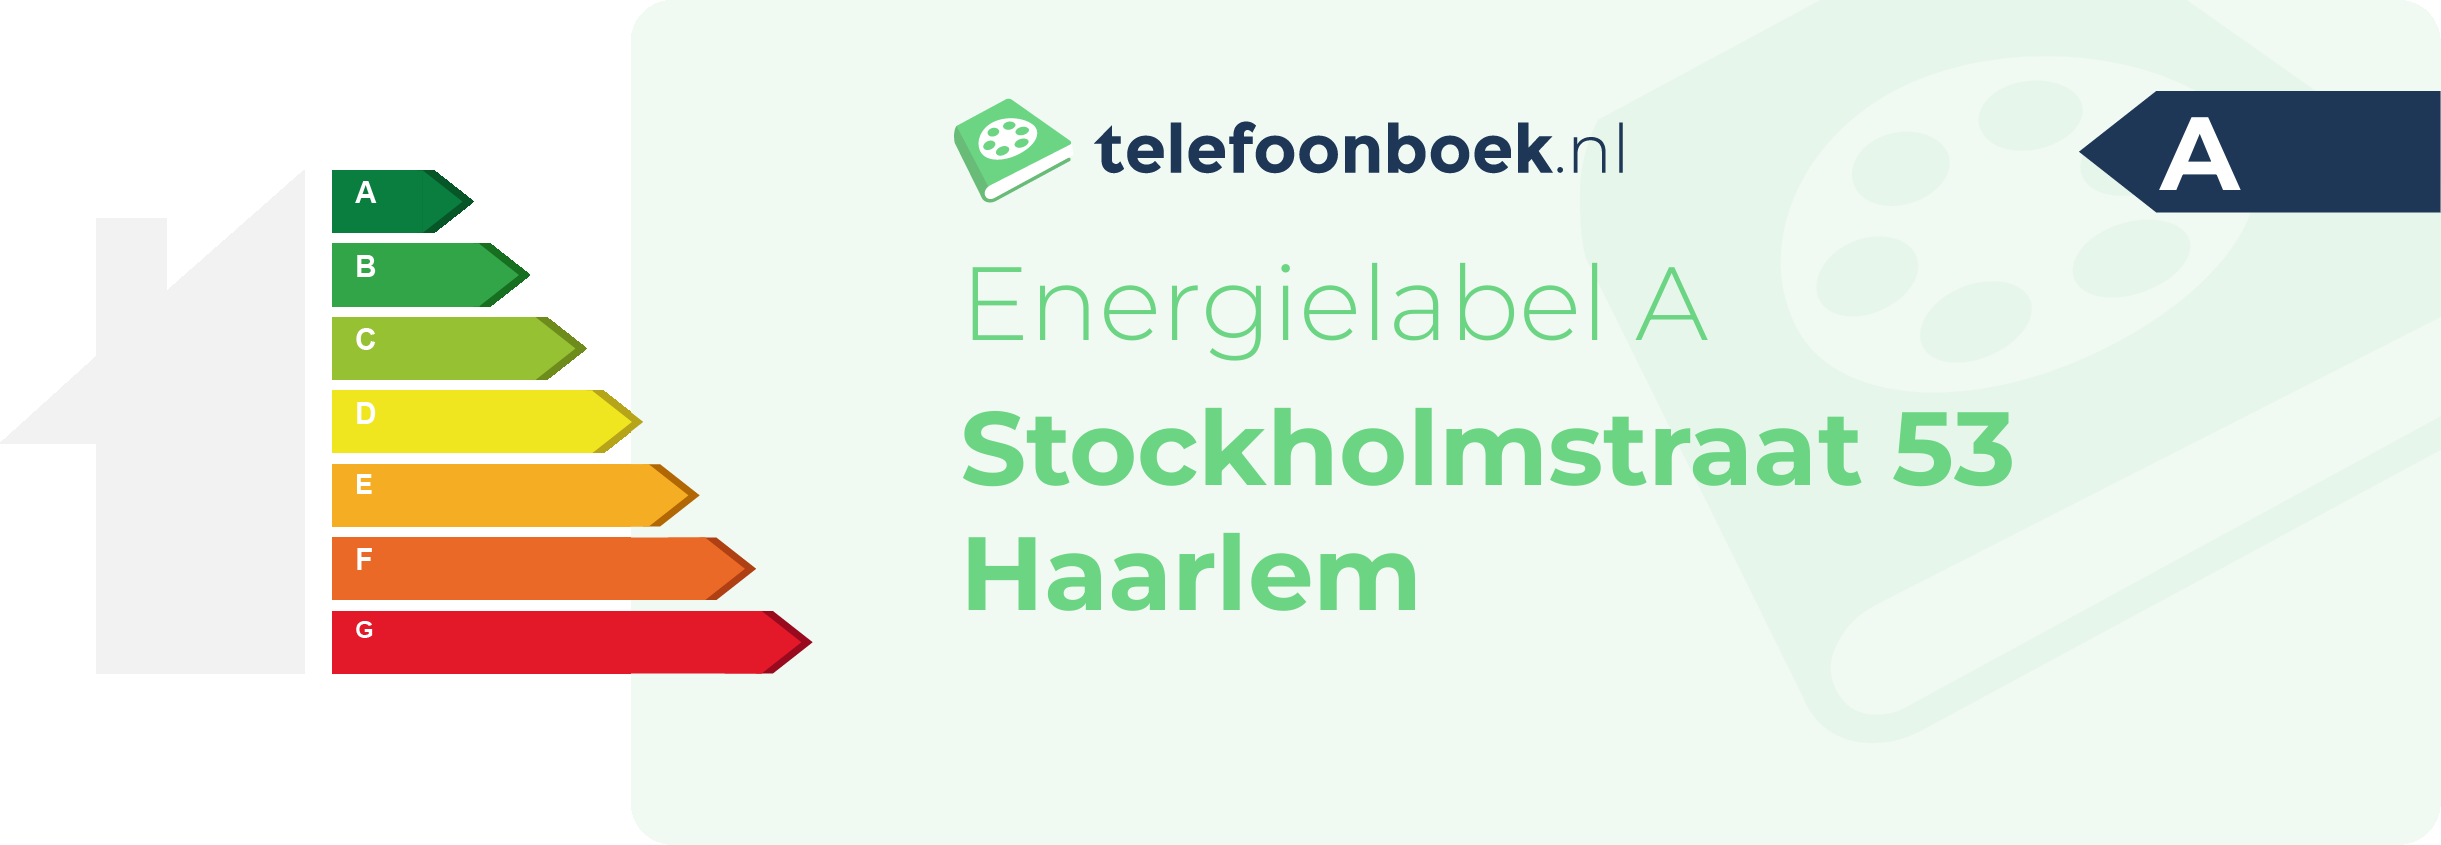 Energielabel Stockholmstraat 53 Haarlem